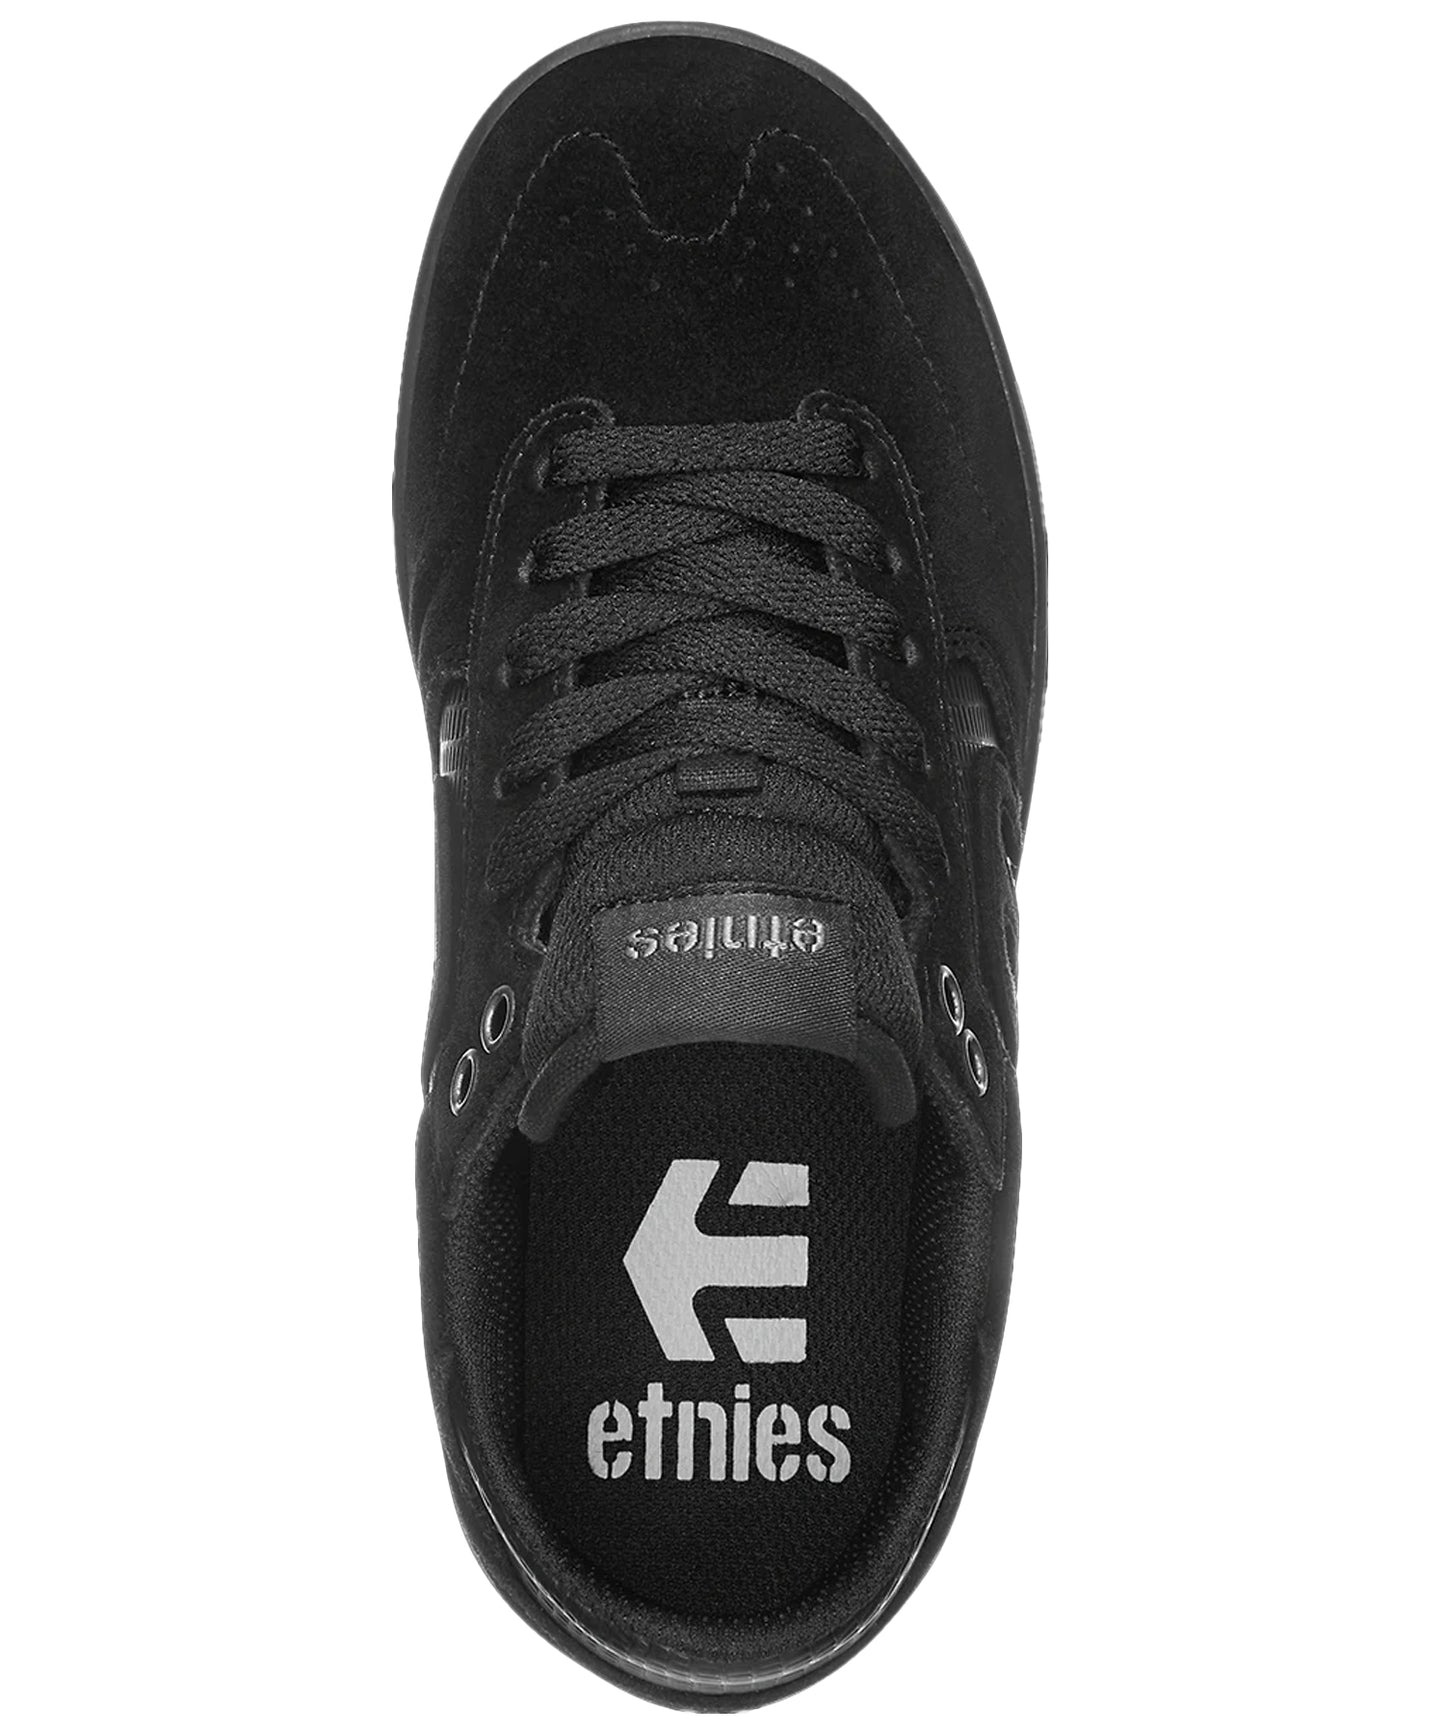 etnies-kids-zapatillas-windrow-color-negro-suela-de-caucho-ante-sintético.